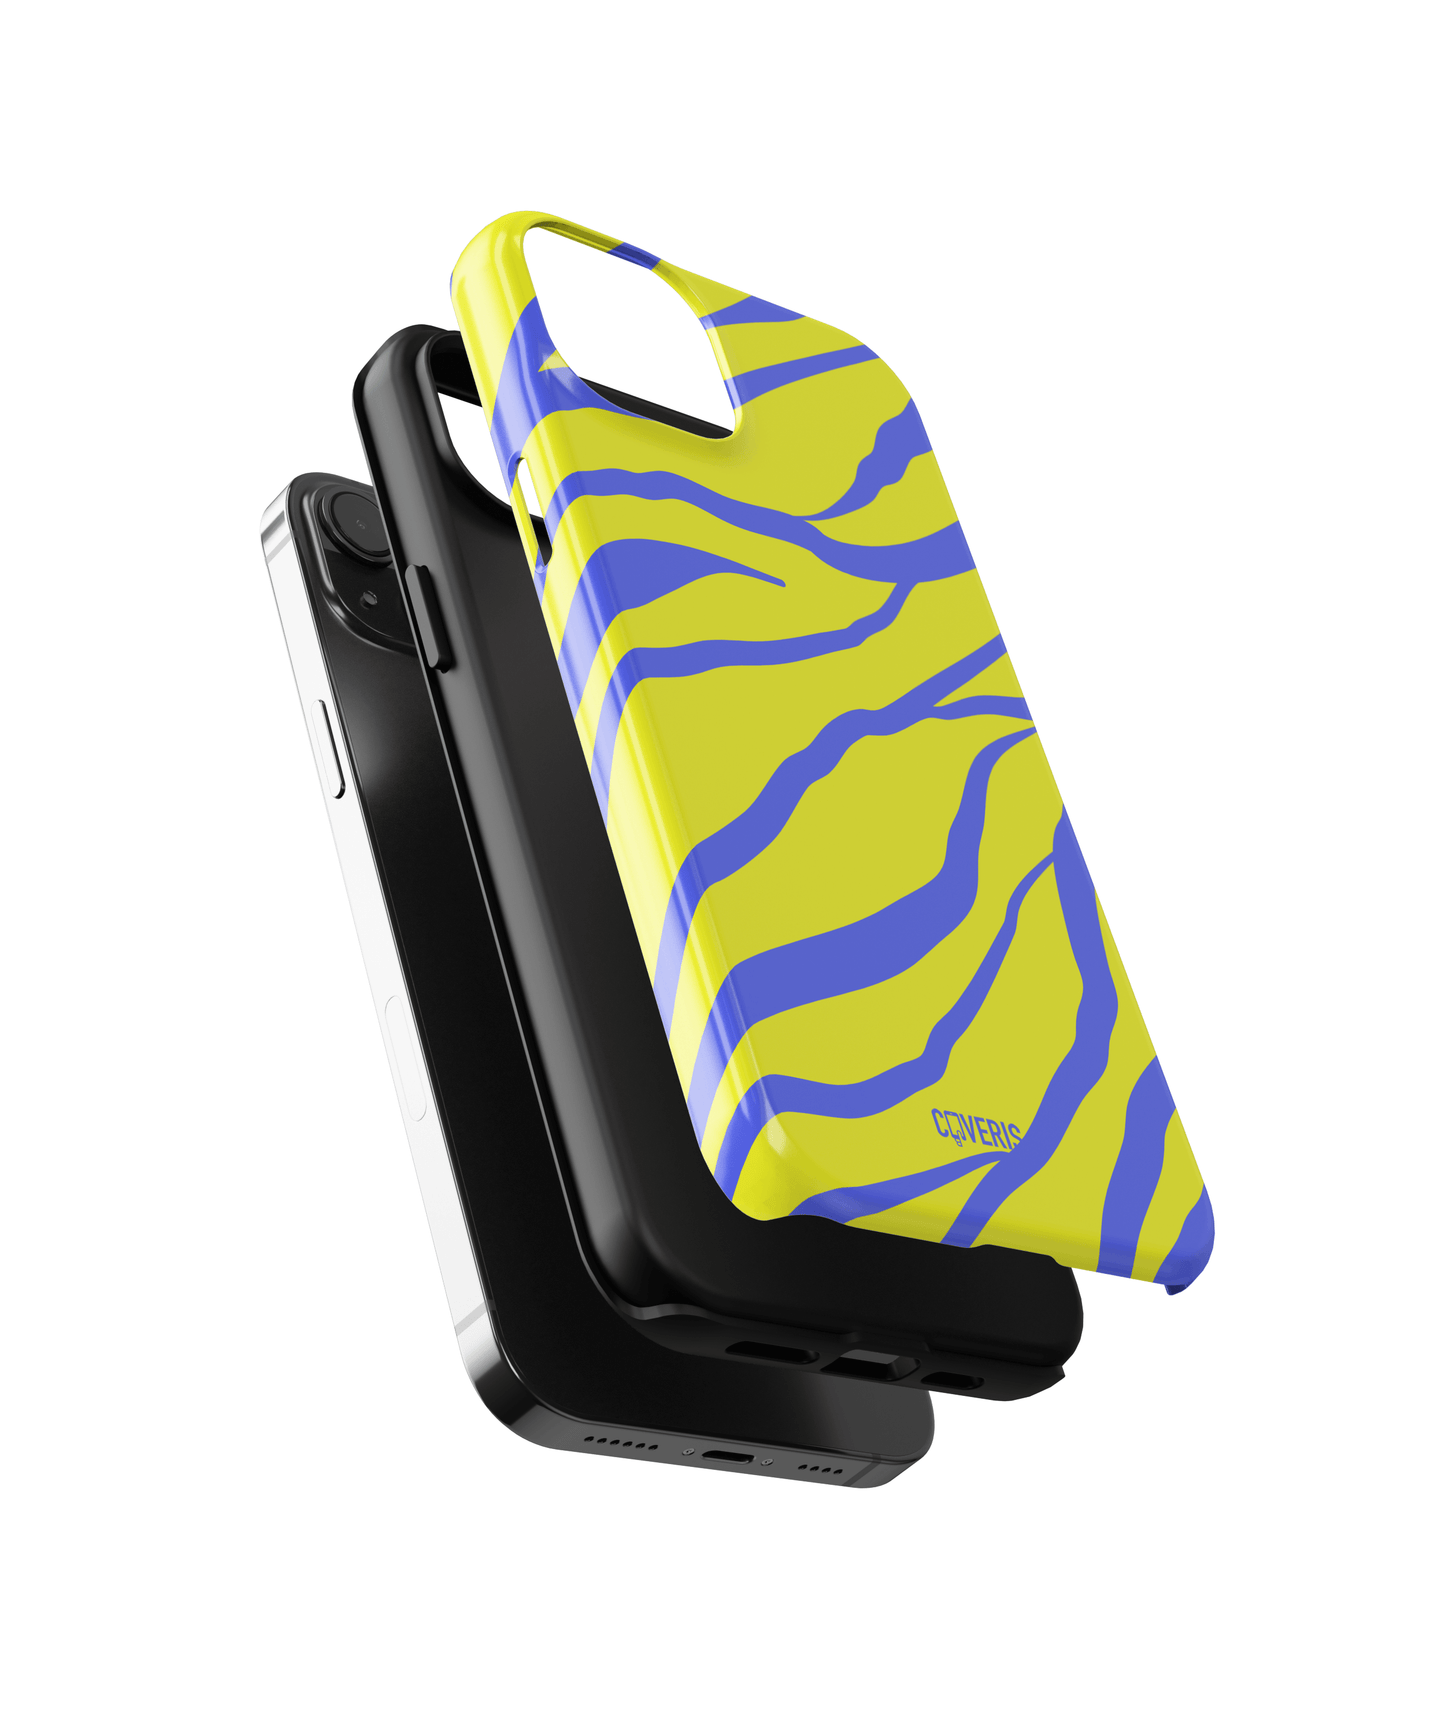 Neonique - Huawei P30 phone case